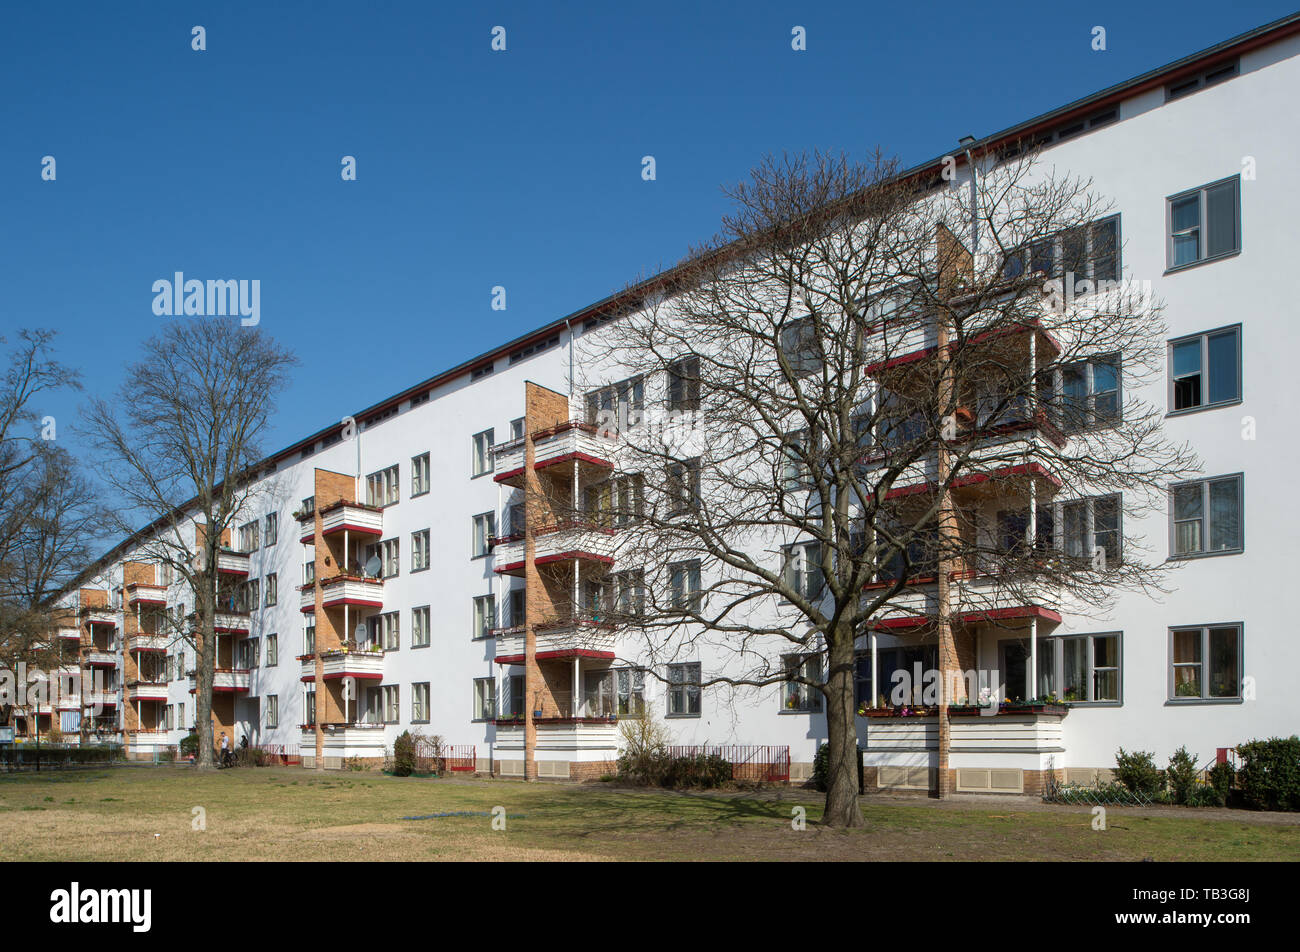 10.04.2018, Berlin, Berlin, Germany - Residential development in the large Siemensstadt housing estate, a modern Berlin housing estate, built between  Stock Photo